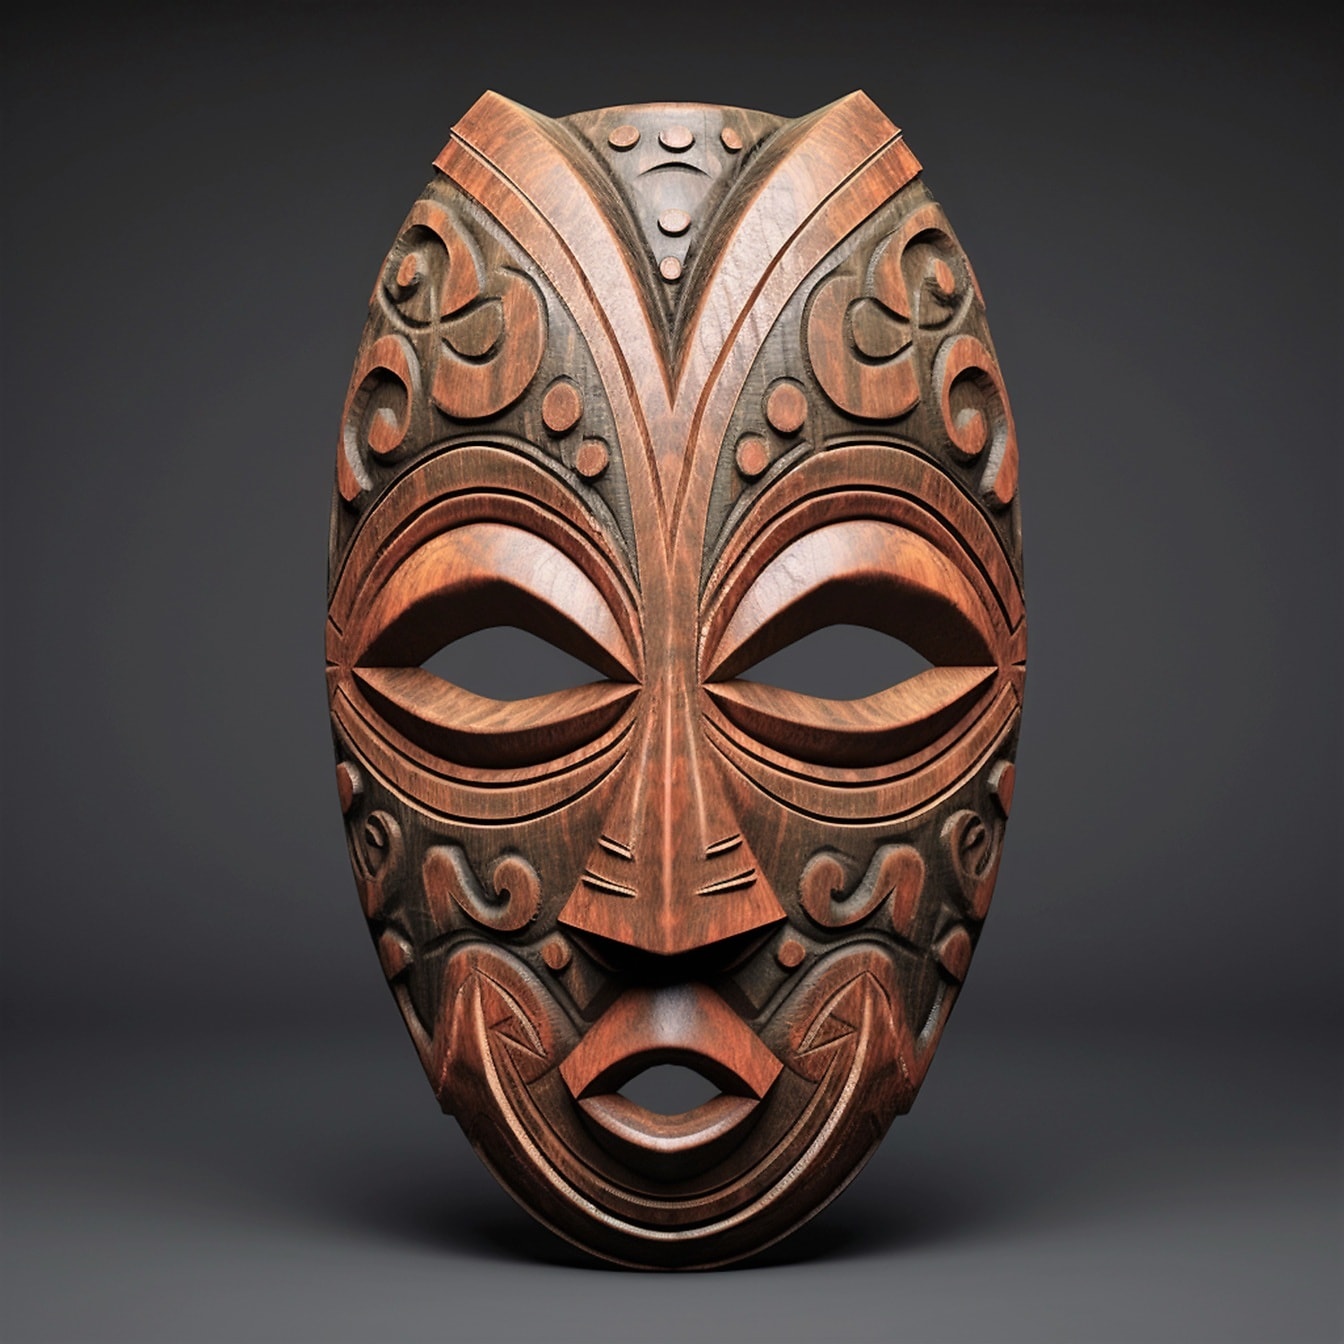 Masque facial africain traditionnel fait à la main en gros plan